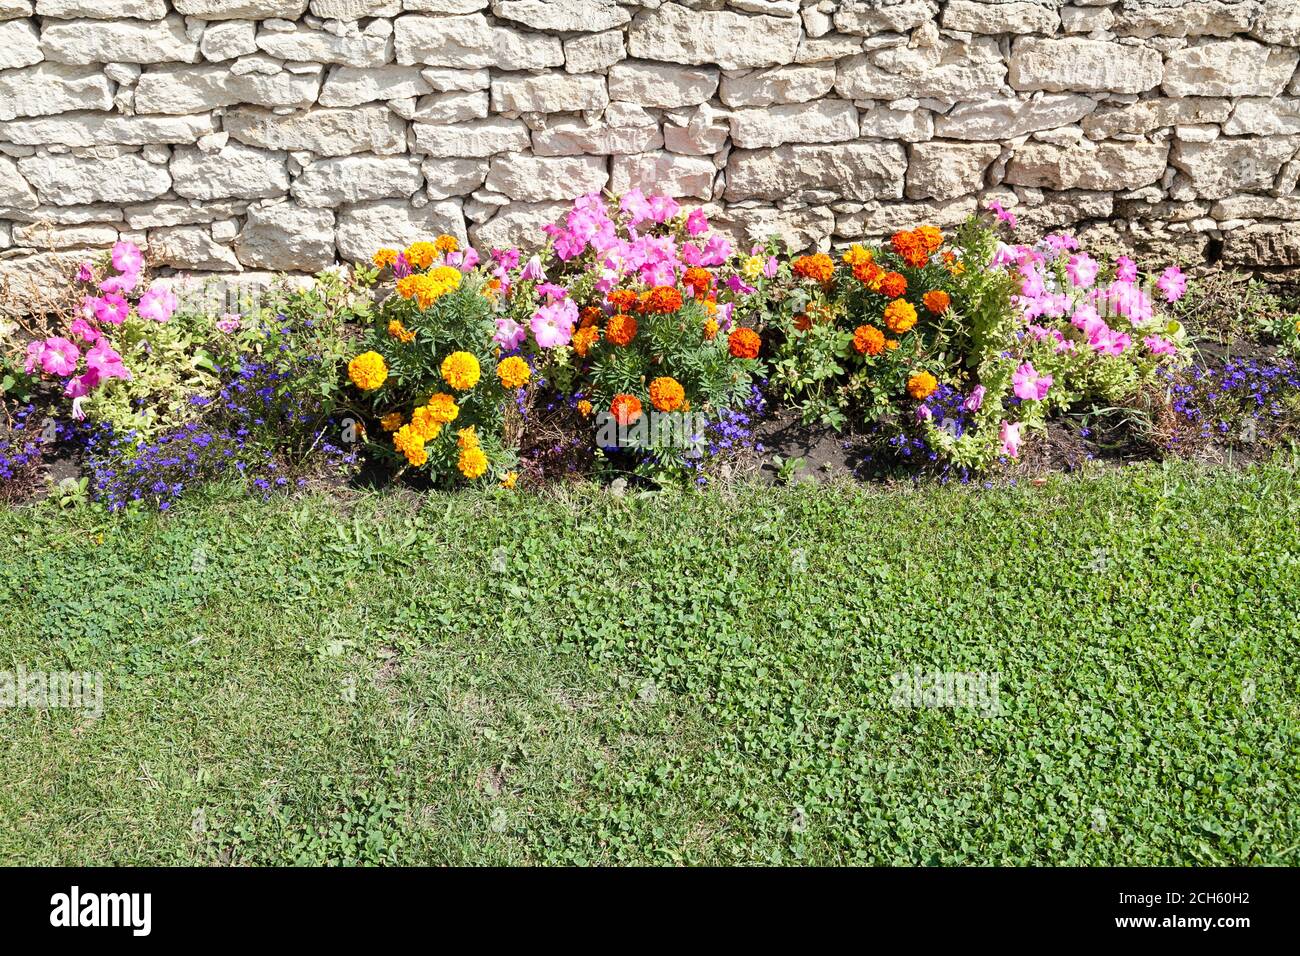 Giardino fiori letto accanto a rocce calcaree e erba verde Foto Stock